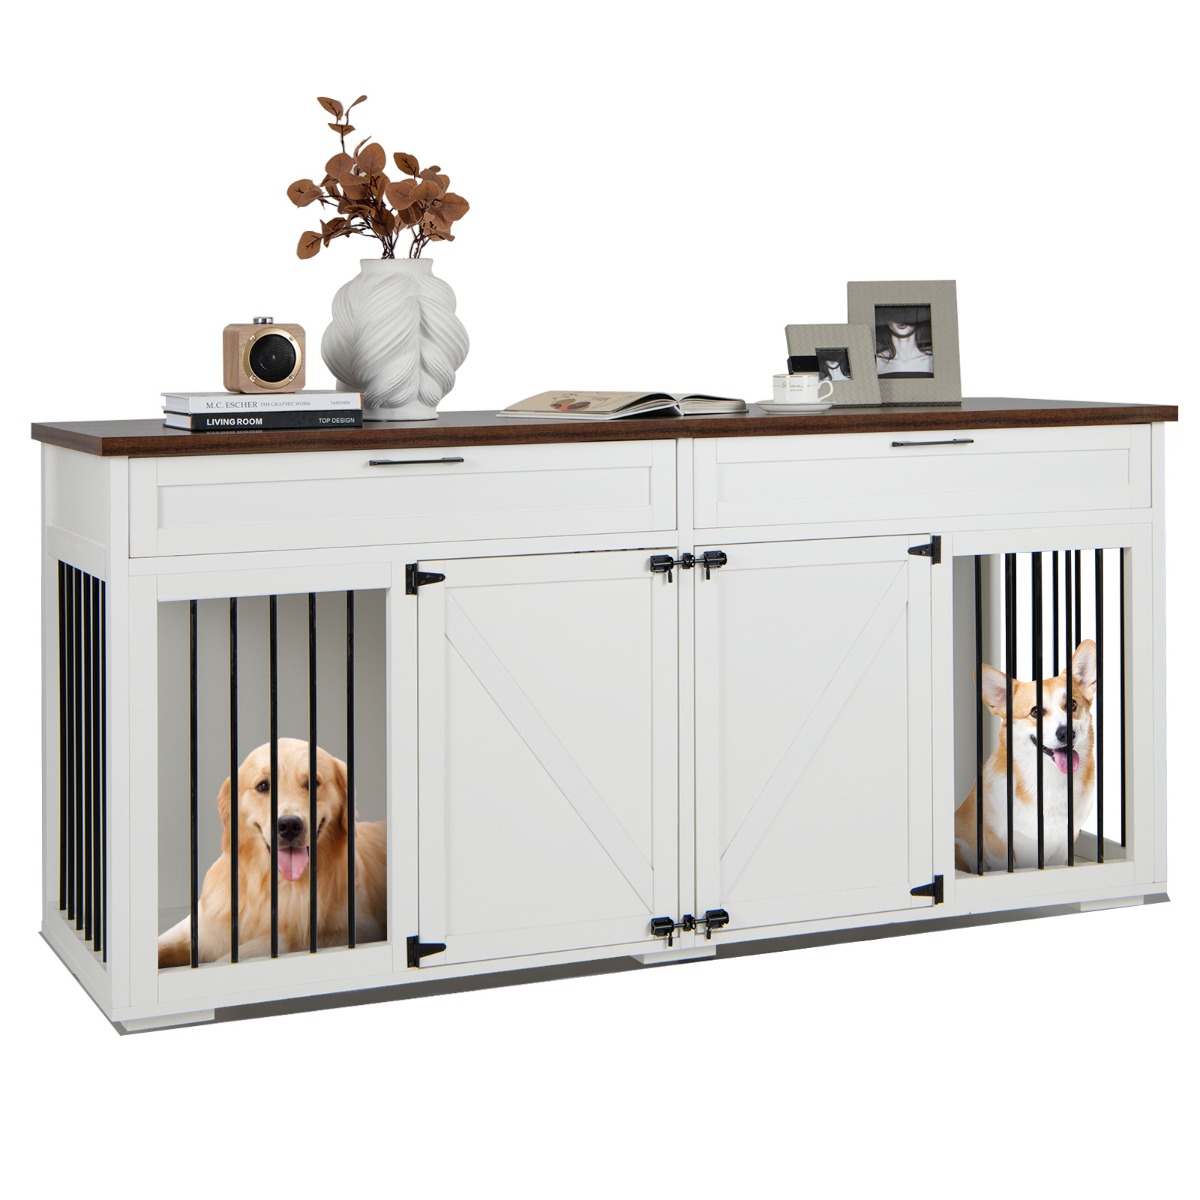 3 in 1 Hundekäfig mit 2 Türen & 2 Schubladen & Trennwand Hundebox im Möbelstil Weiß